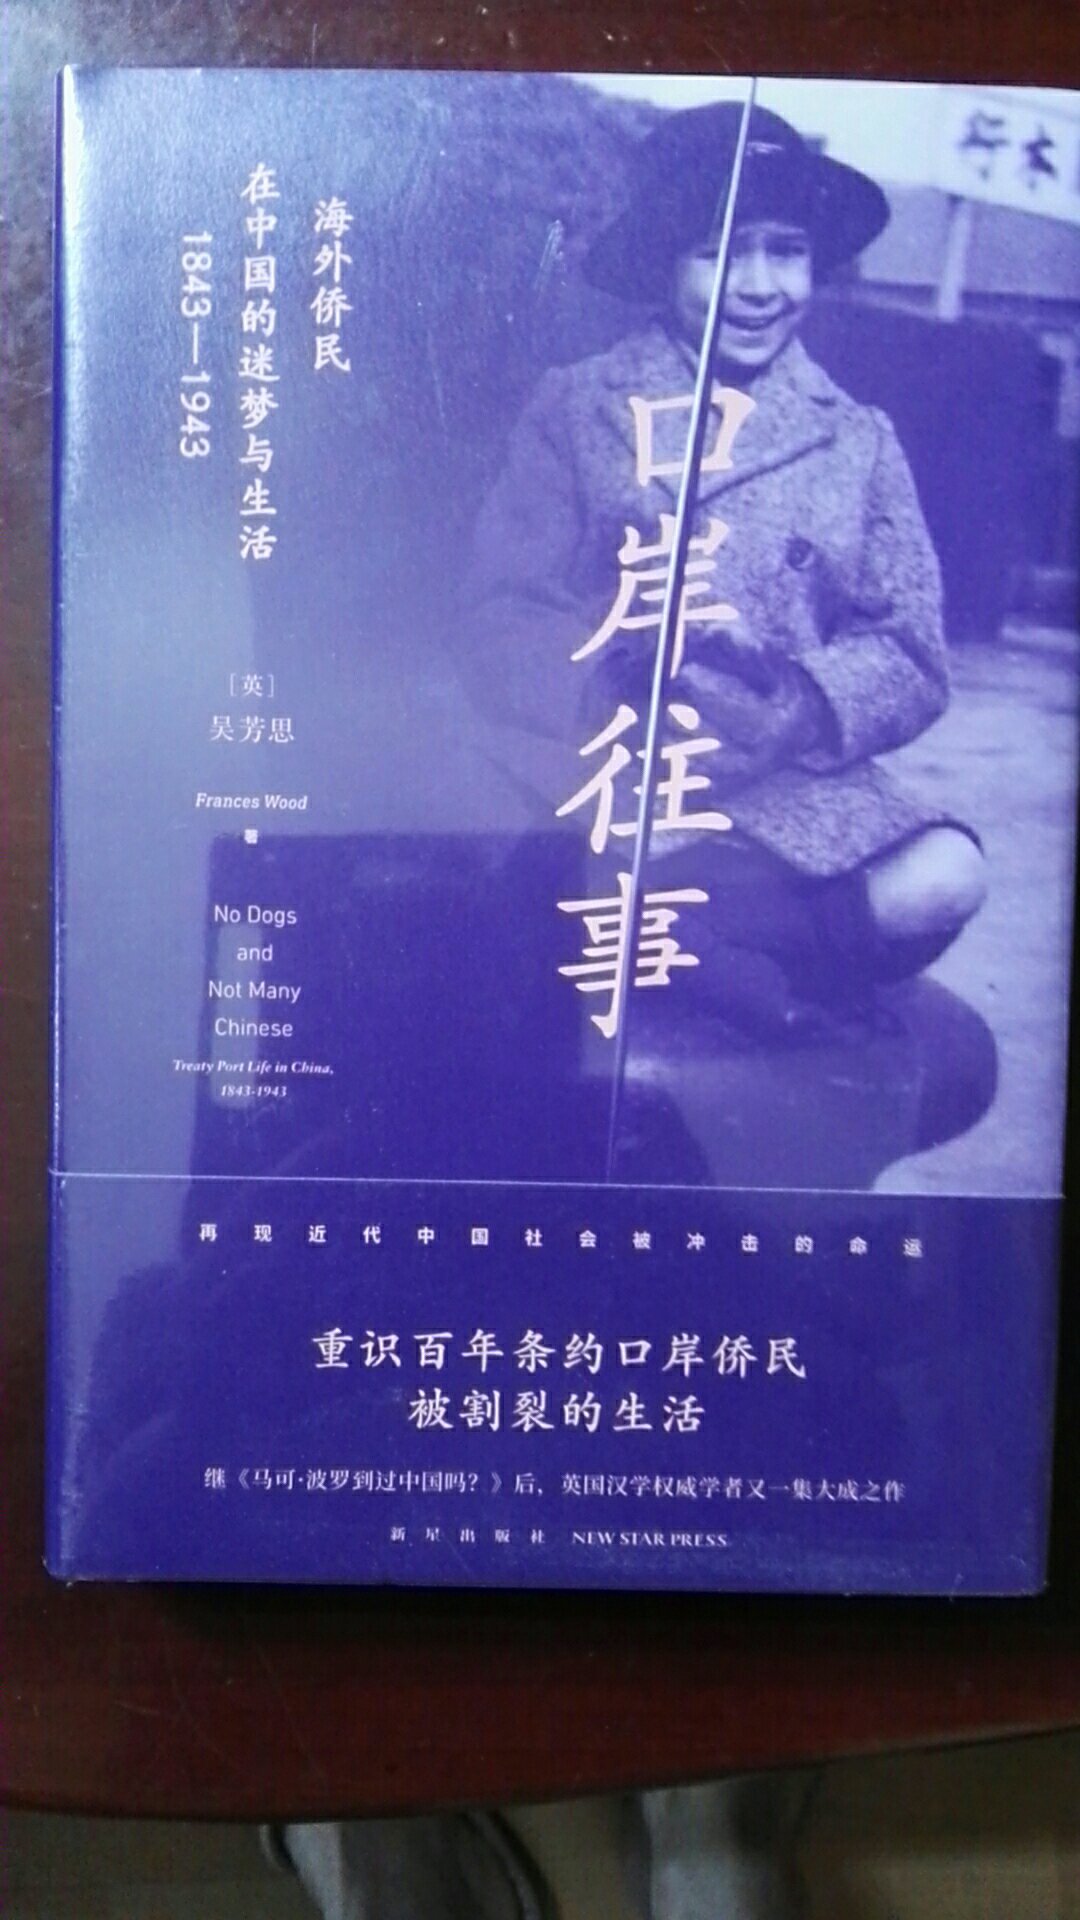 口岸往事：海外侨民在中国的迷梦与生活（1843—1943），好书推荐。。